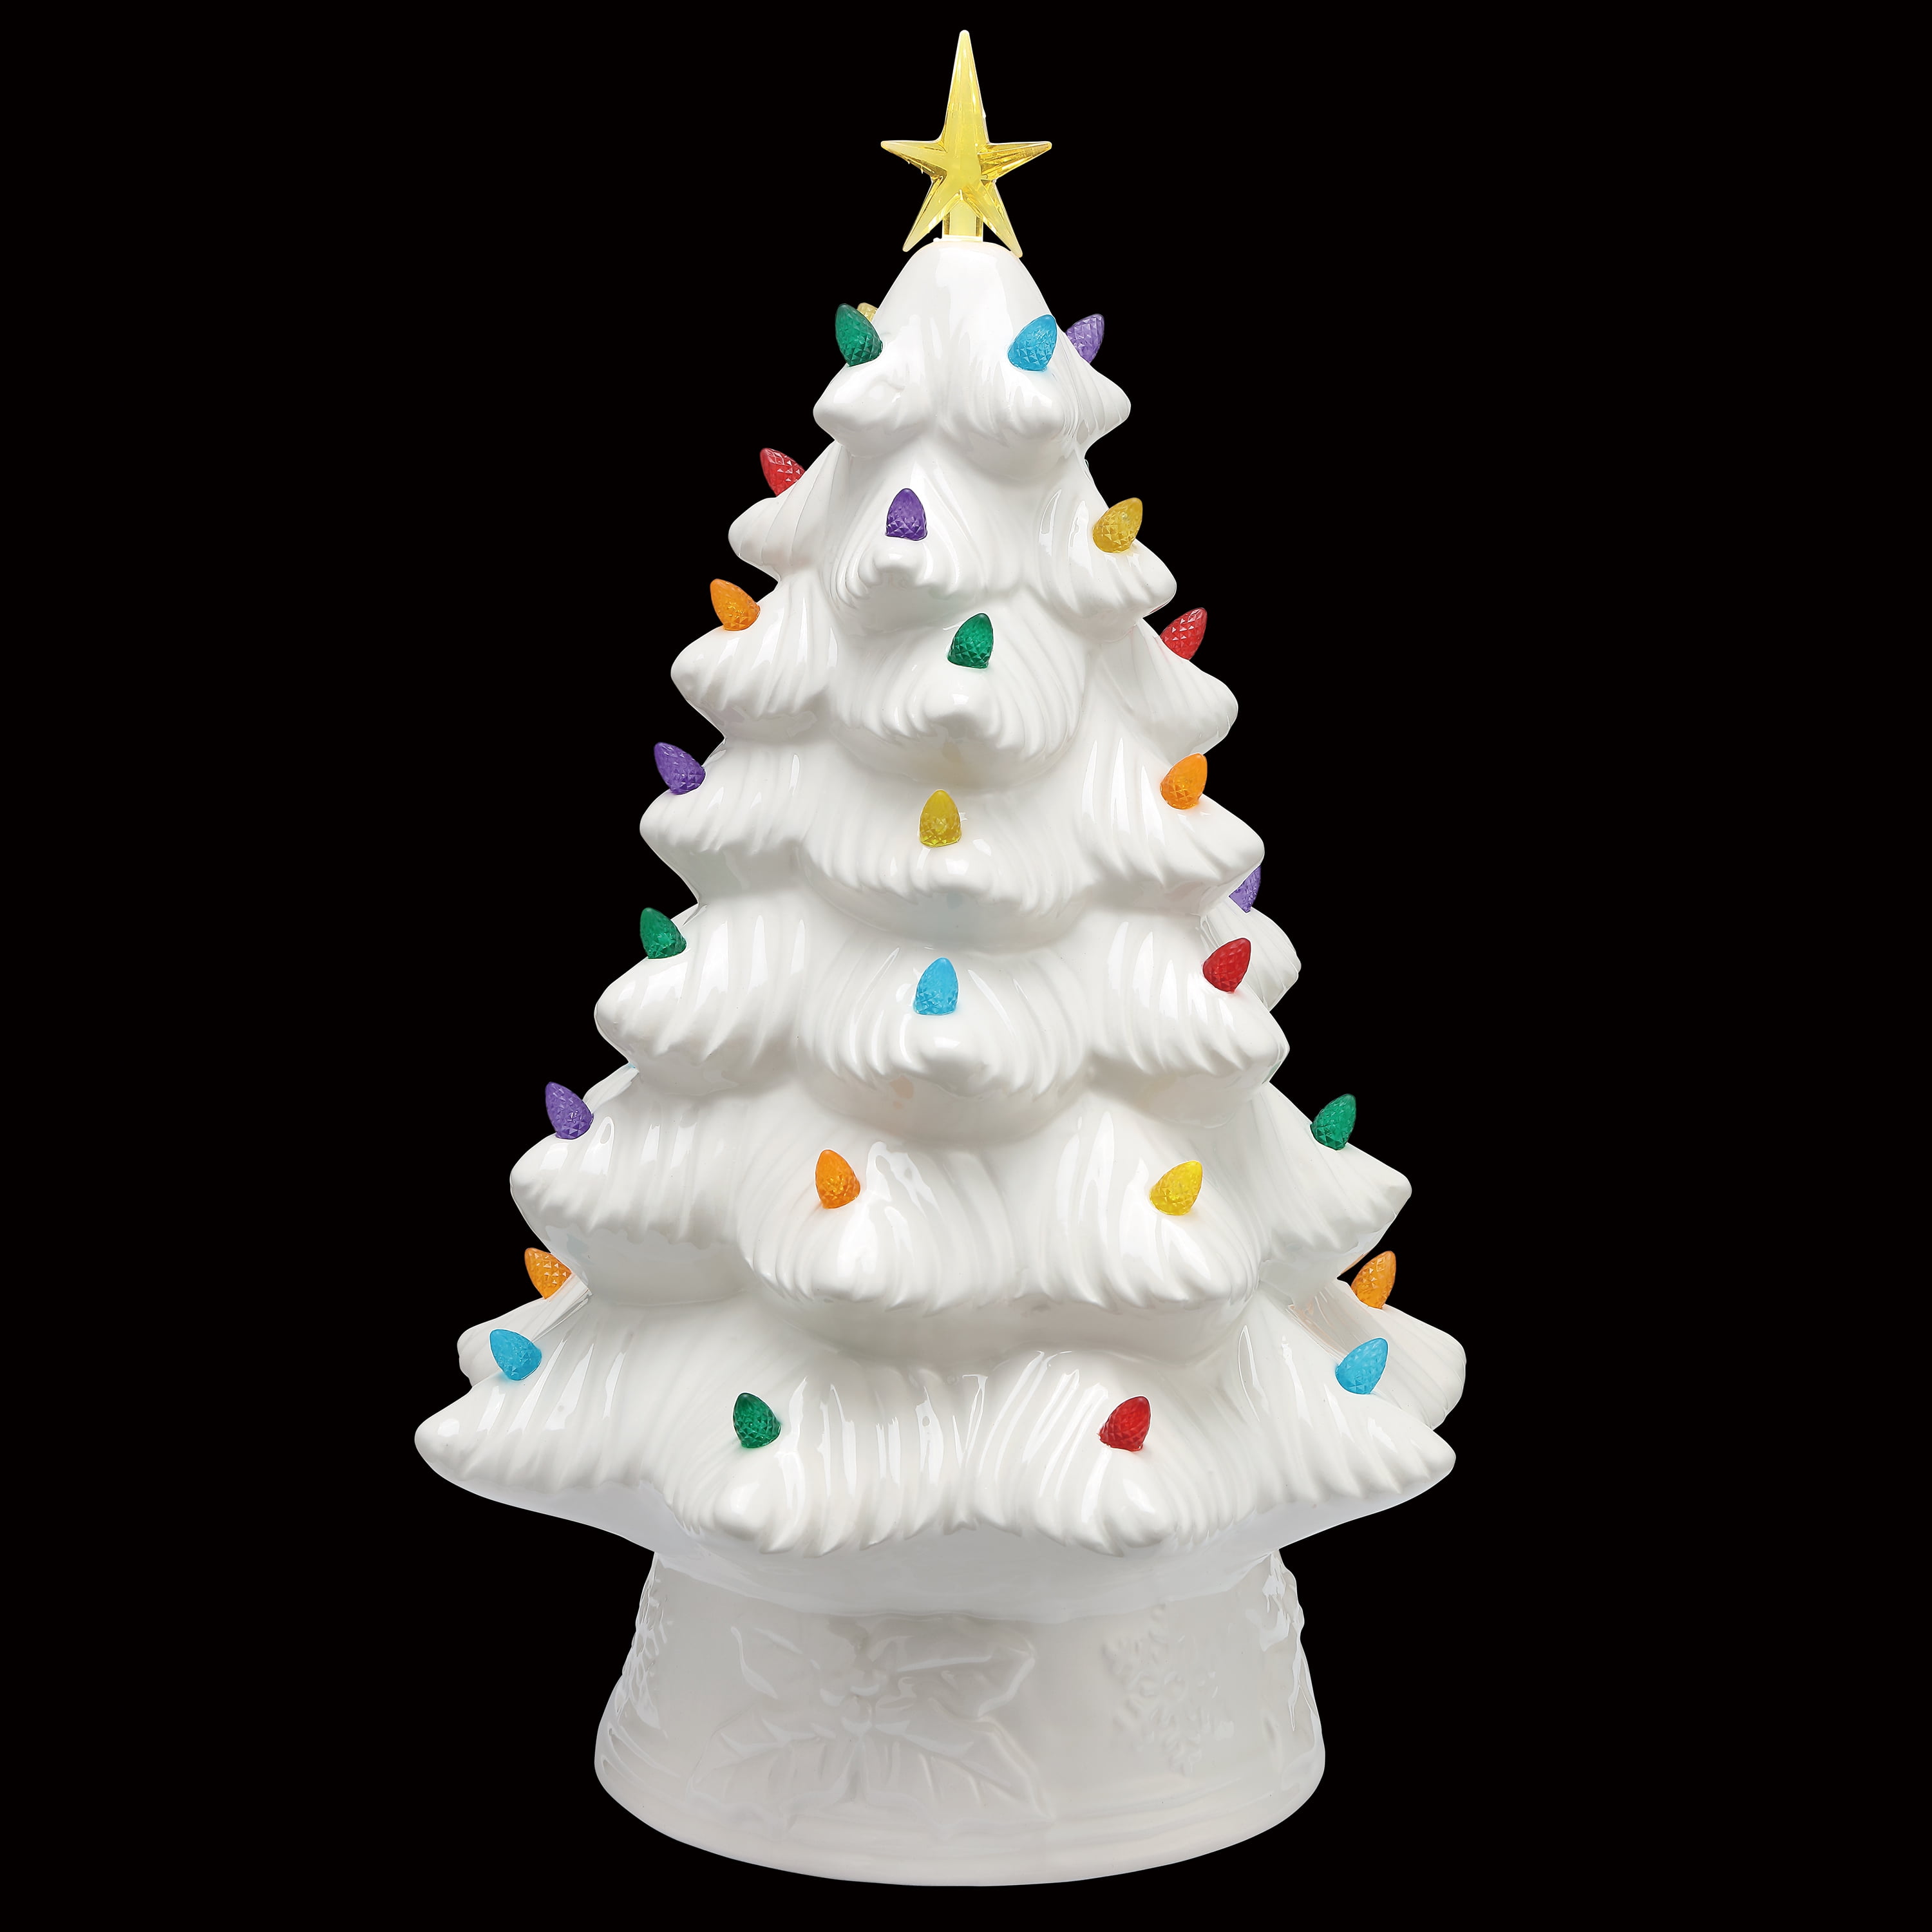 Nostalgic Christmas Tree 16” tall teal color